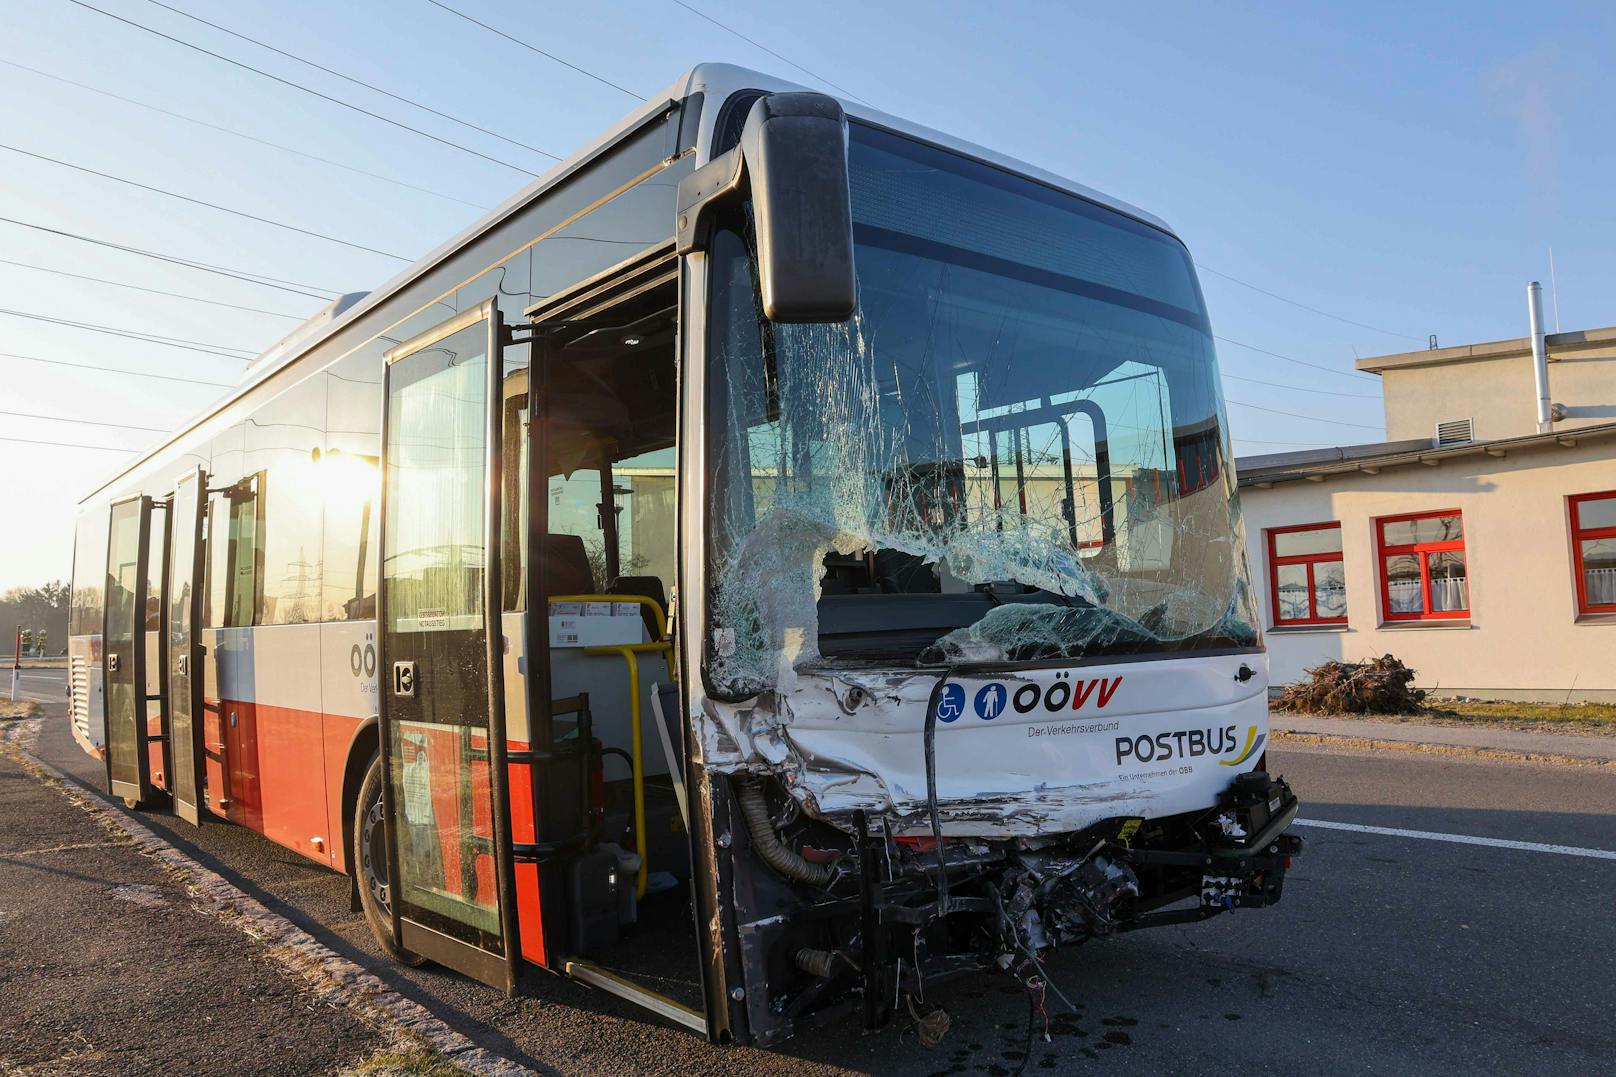 Zum Schulstart: Schul-Bus crasht mit zwei Autos